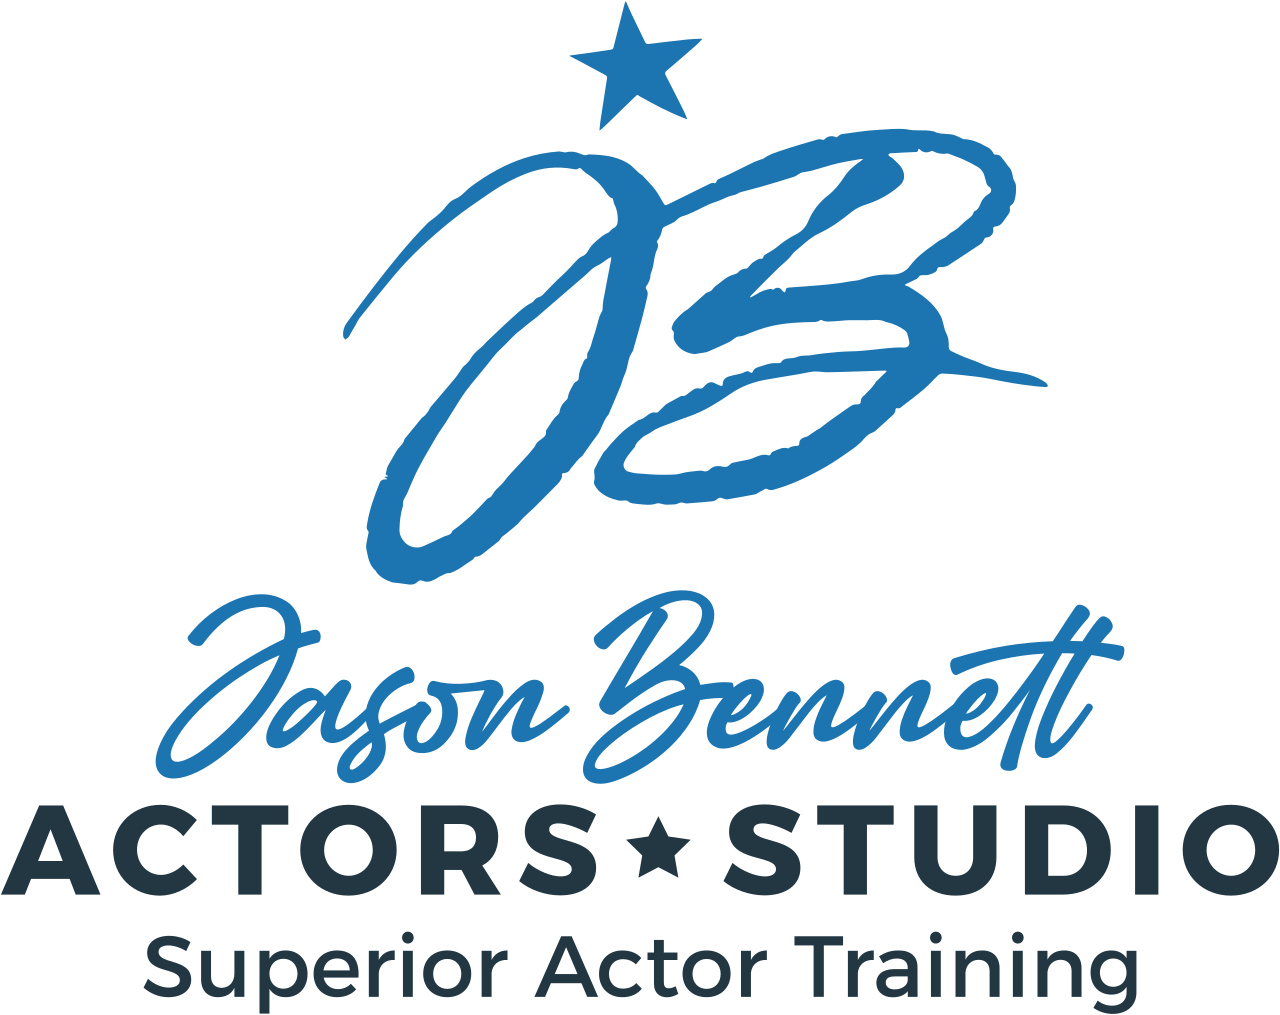 The Jason Bennett Actors Studio's web page